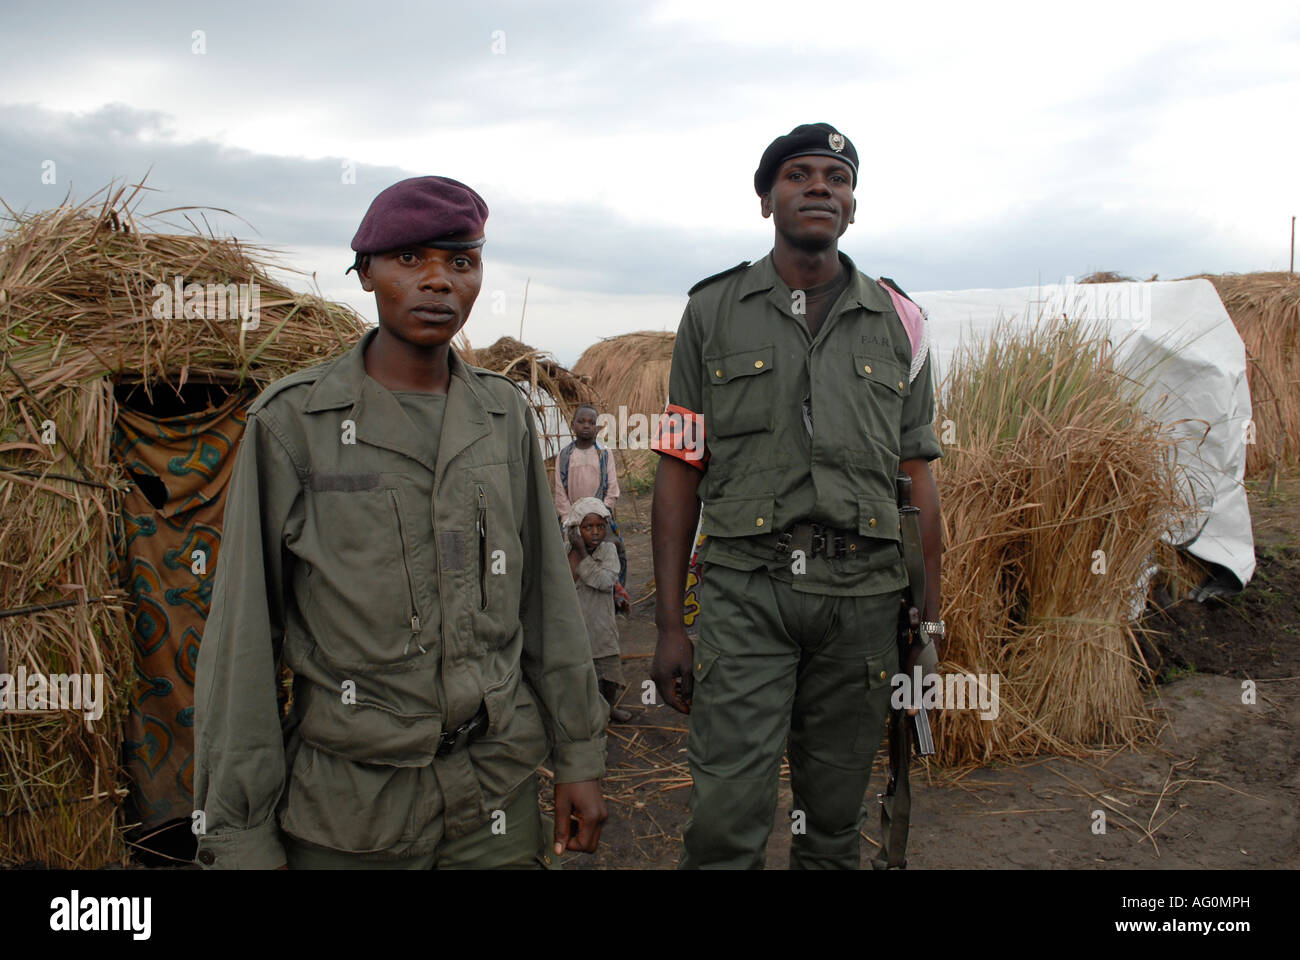 Des soldats congolais armés du gouvernement des FARDC gardent la garde dans un camp de fortune de PDI dans la province du Nord-Kivu, RD Congo Afrique Banque D'Images